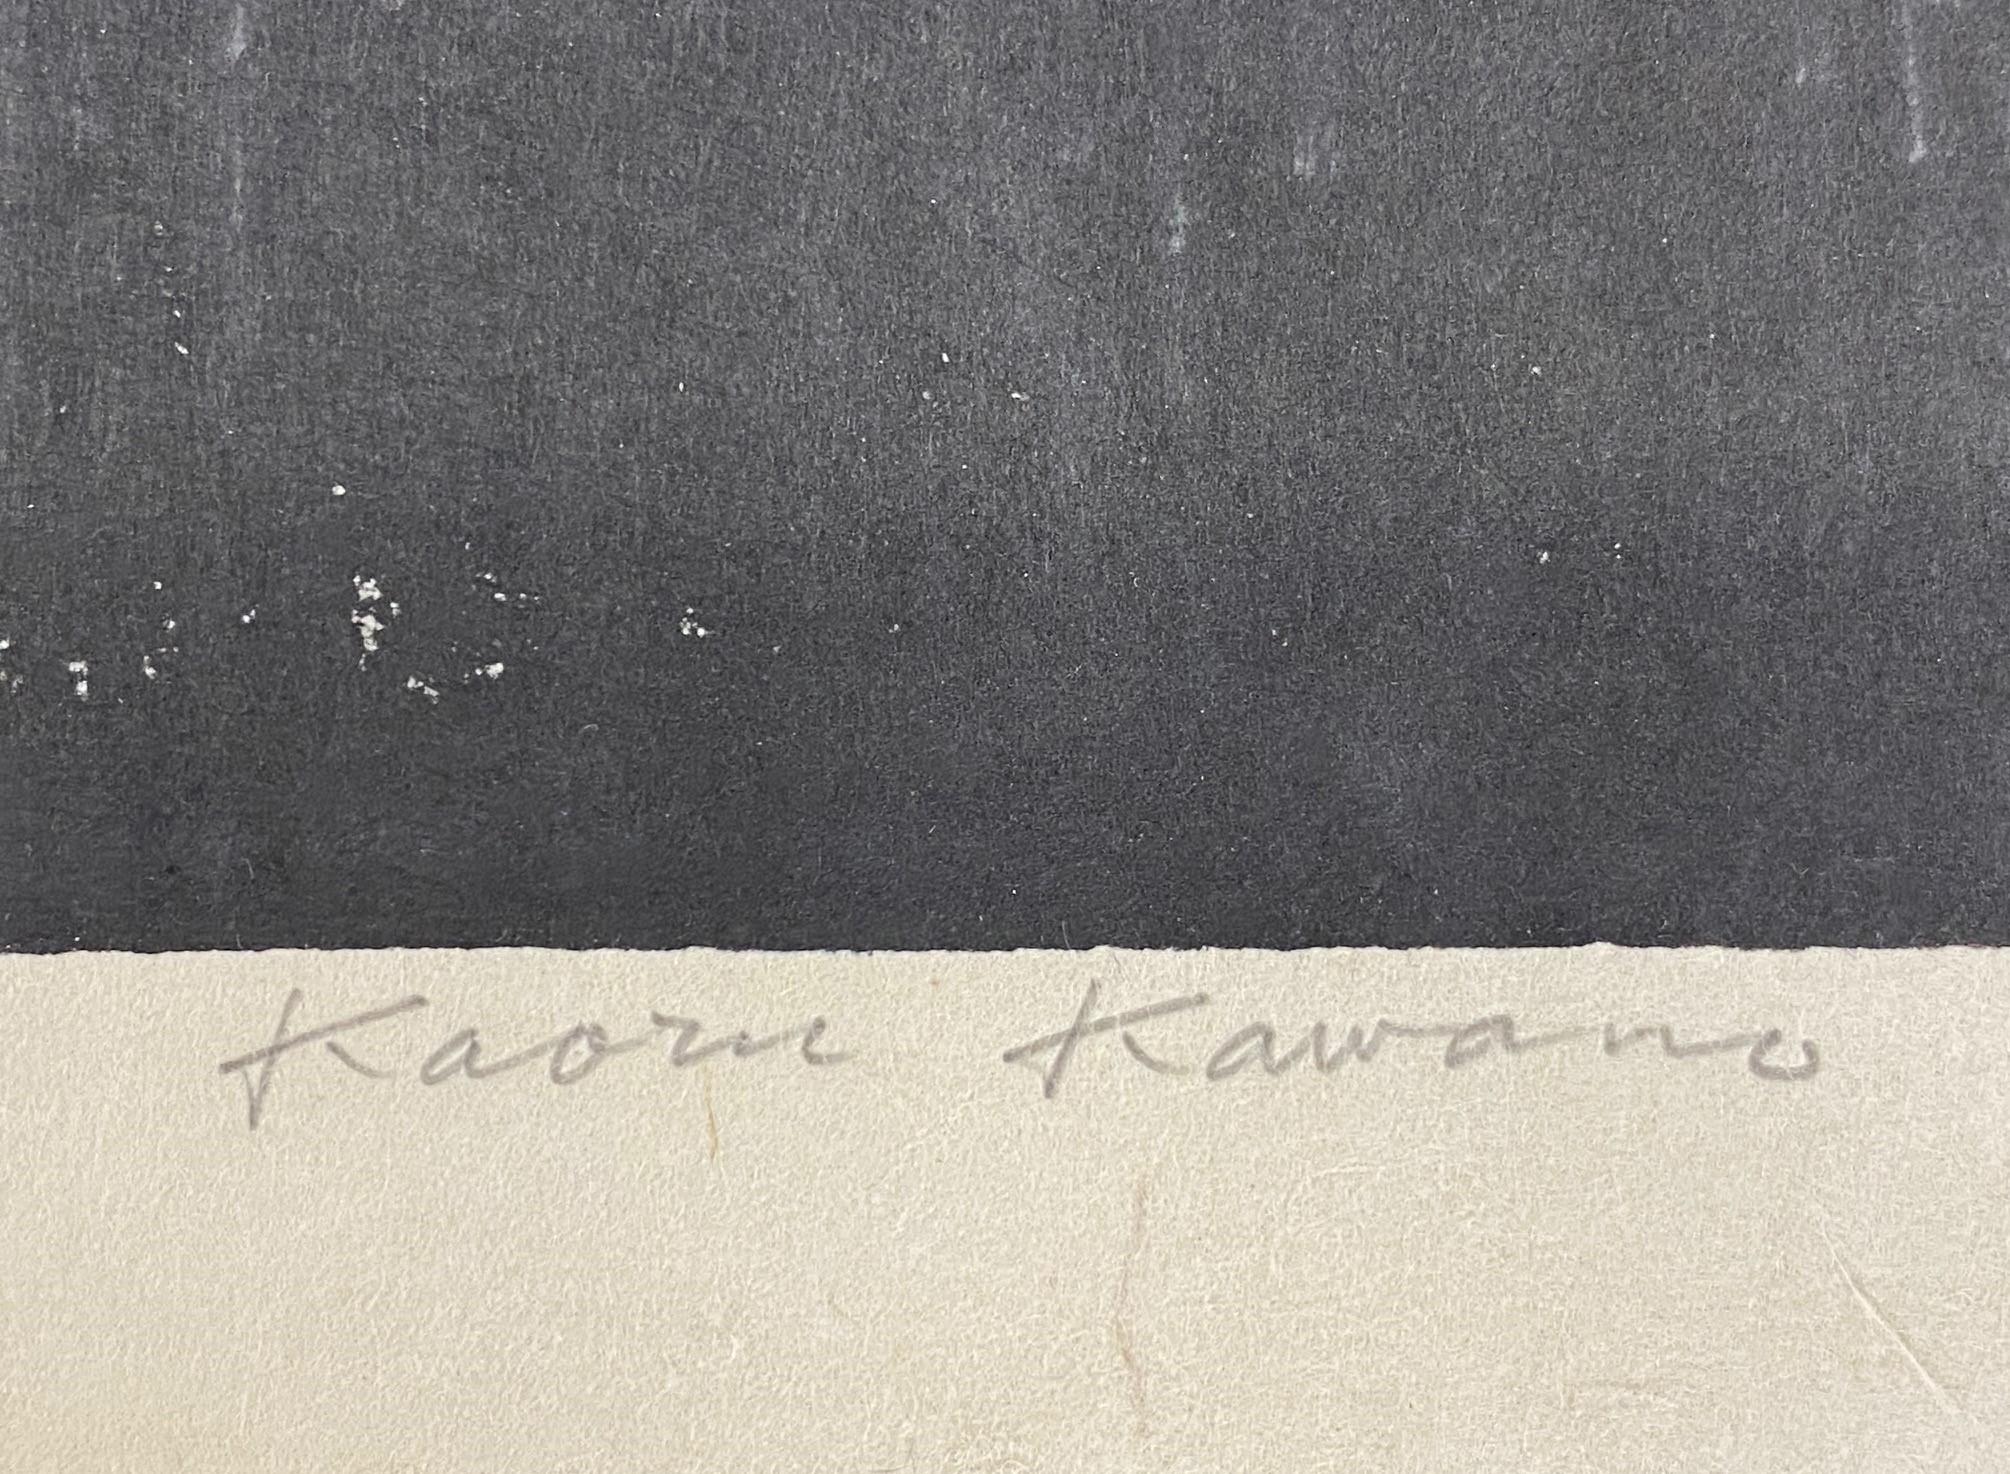 Kaoru Kawano Signed Rare Limited Edition Japanese Woodblock Print Maria Kwannon 2